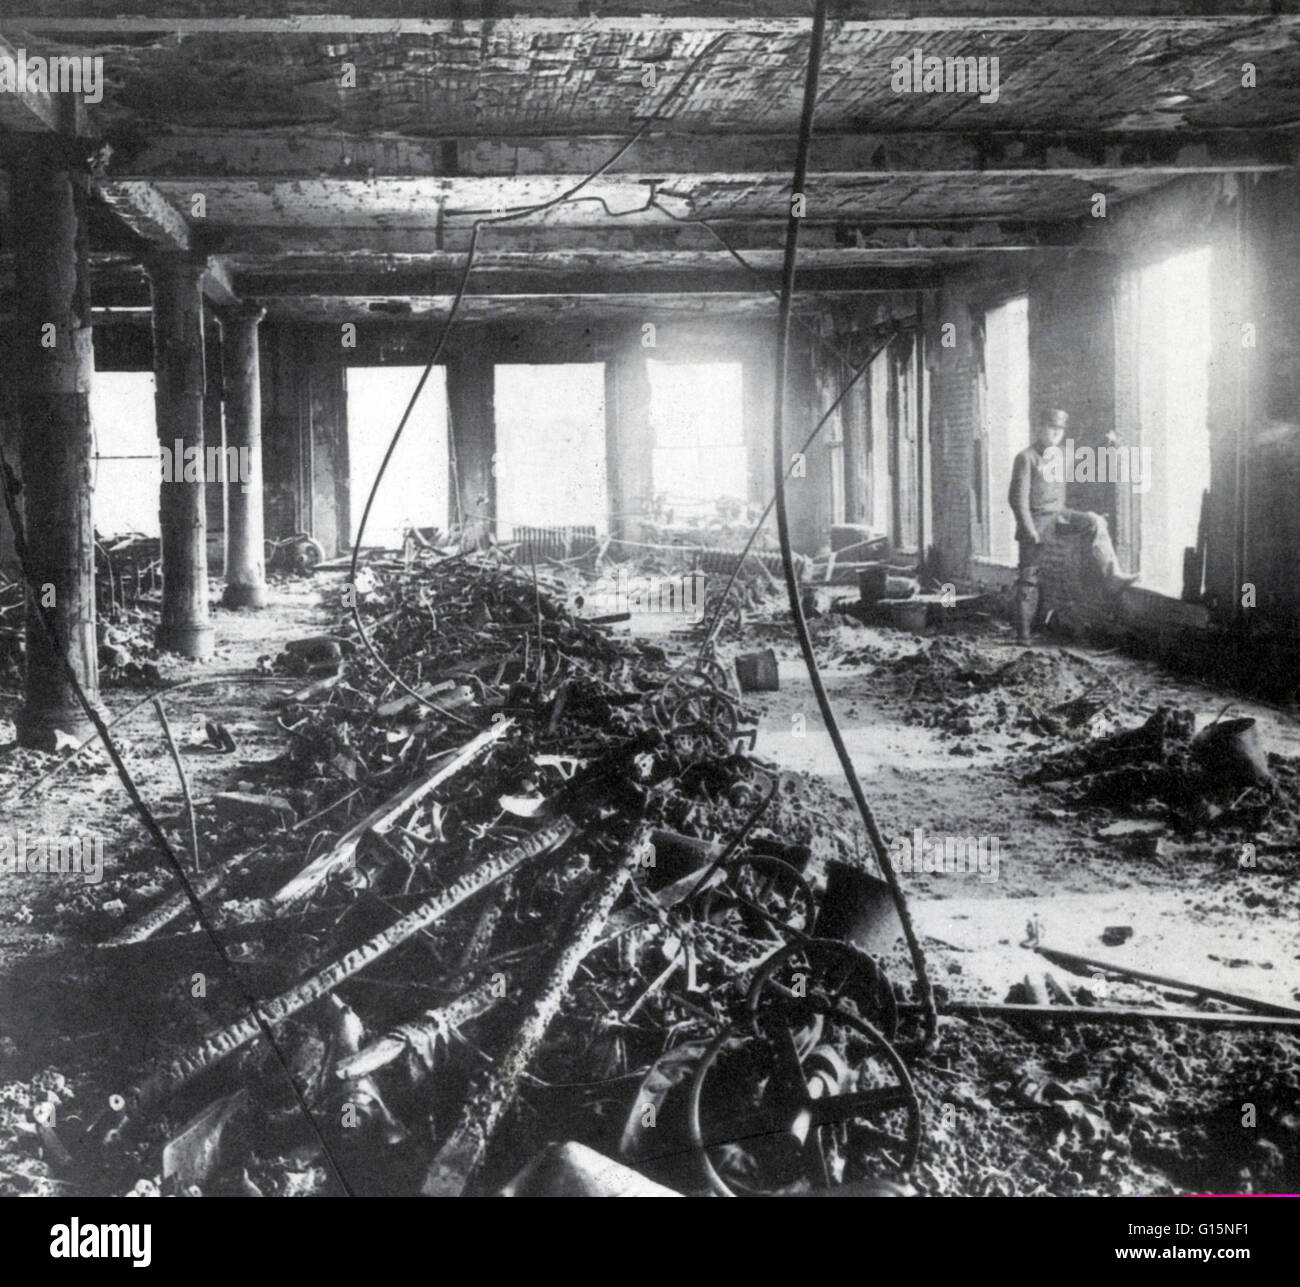 Das Feuer der Triangle Shirtwaist Factory in New York City am 25. März 1911, war der tödlichste industriellen Katastrophe in der Geschichte der Stadt New York. Das Feuer breitete sich durch drei Obergeschosse des Gebäudes. Die meisten Arbeiter auf der 8. Etage und Manager o Stockfoto